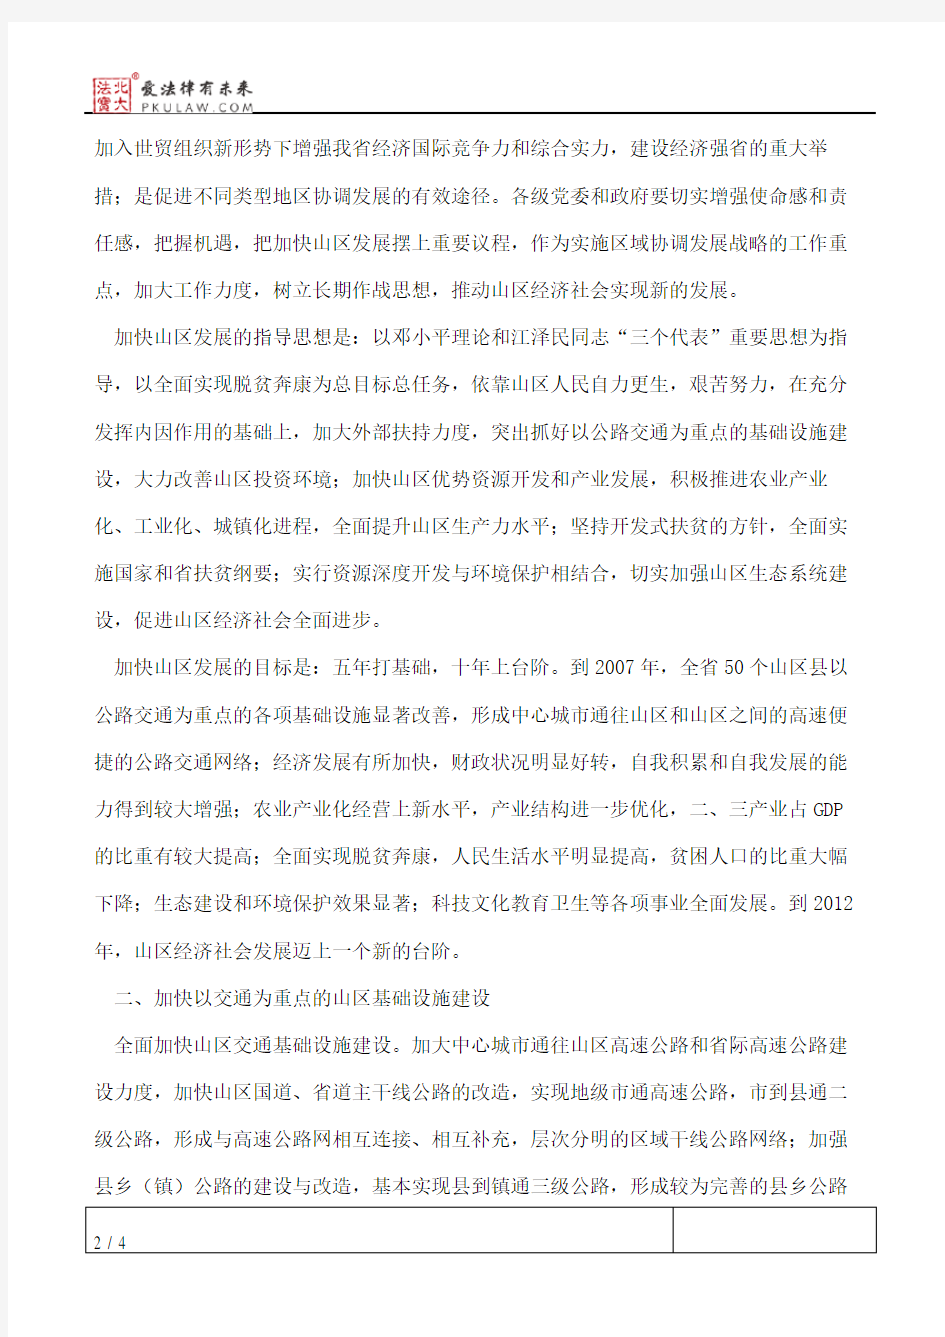 中共广东省委、广东省人民政府关于加快山区发展的决定